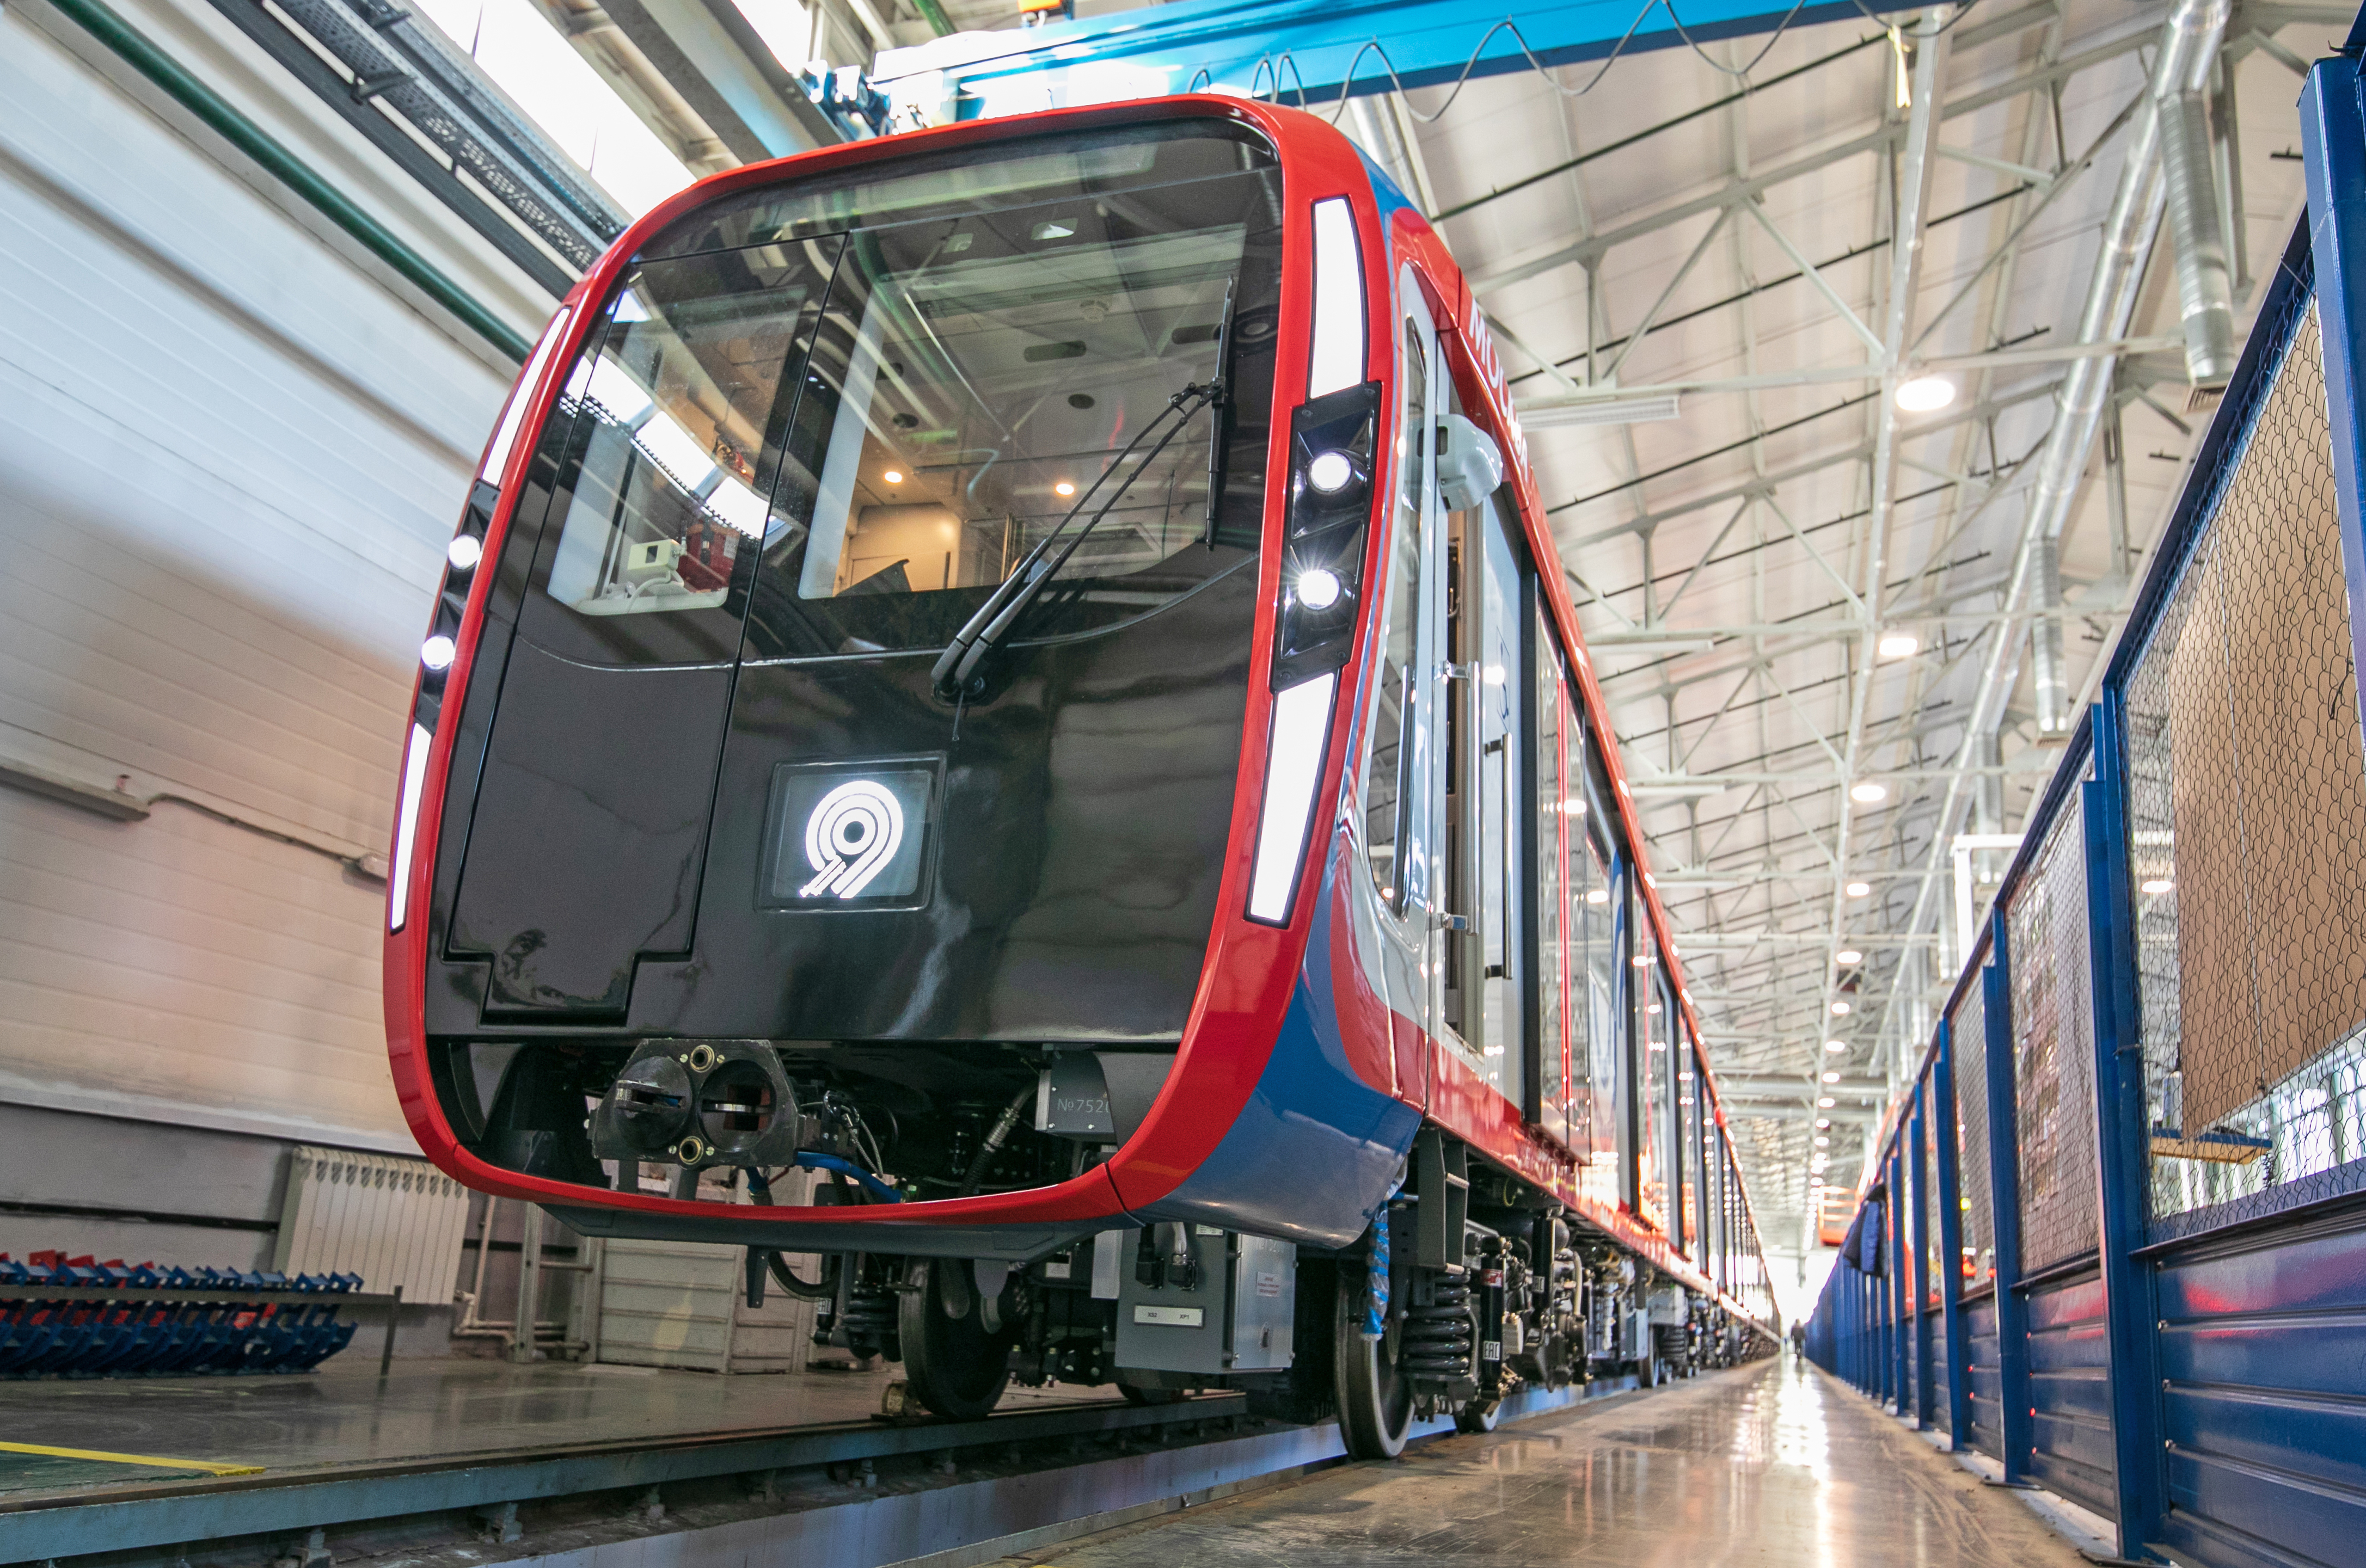 81-775/776/777 “Moscow-2020” metro train